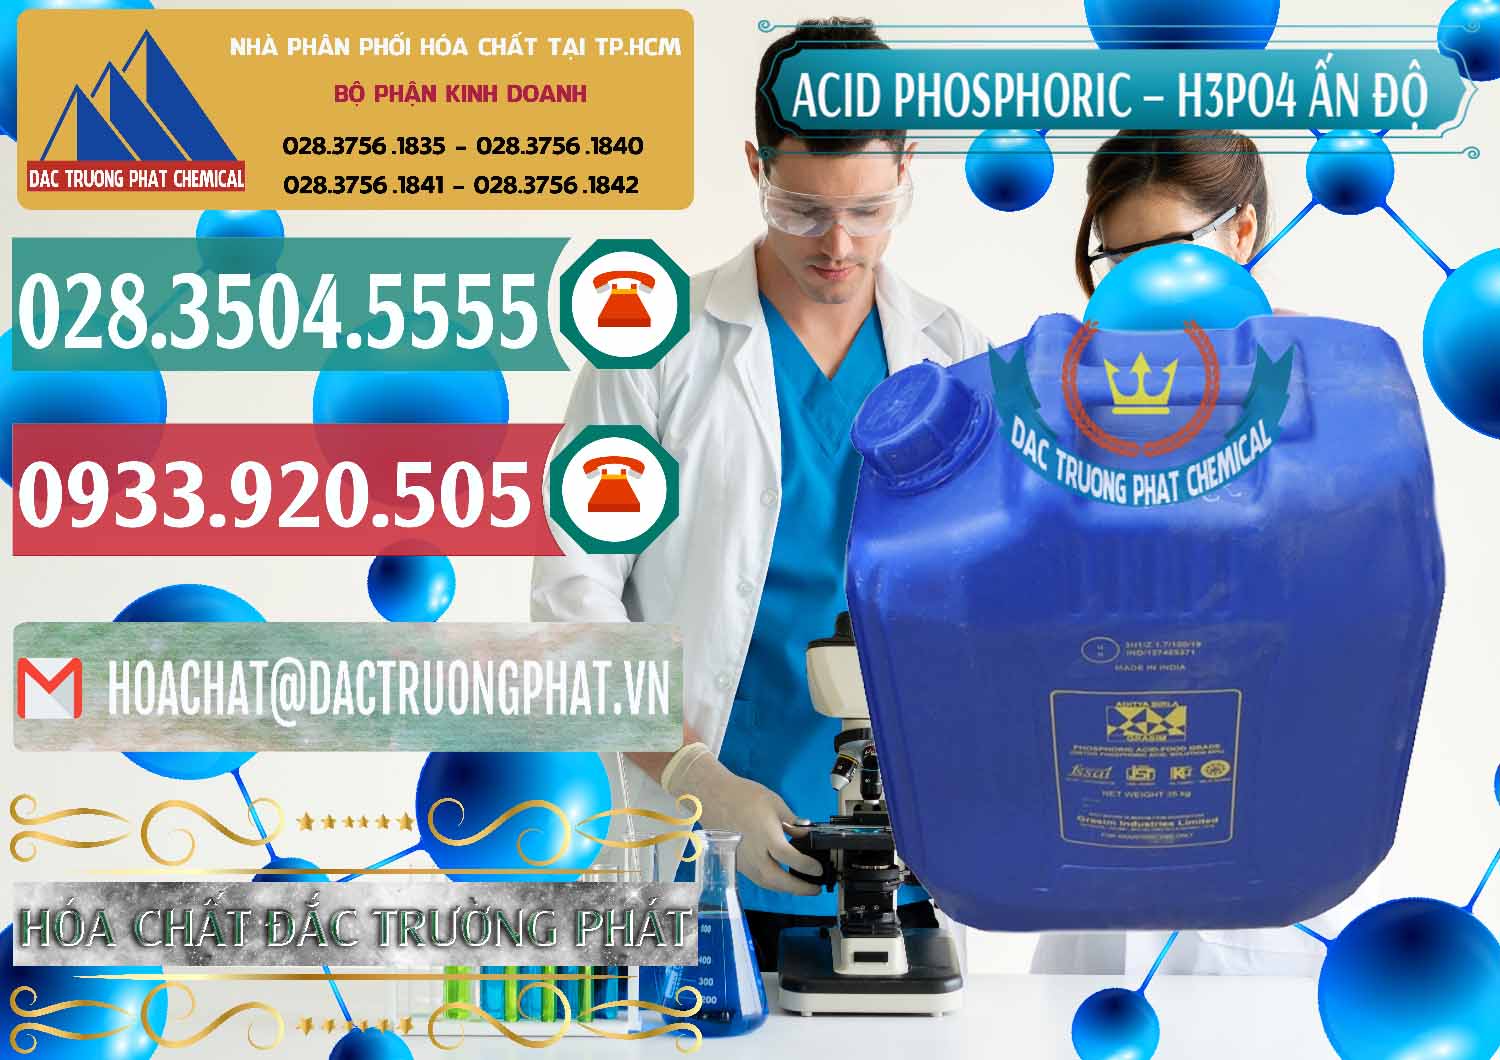 Cty chuyên cung cấp - bán Axit Phosphoric H3PO4 85% Ấn Độ - 0350 - Công ty chuyên nhập khẩu - cung cấp hóa chất tại TP.HCM - muabanhoachat.vn